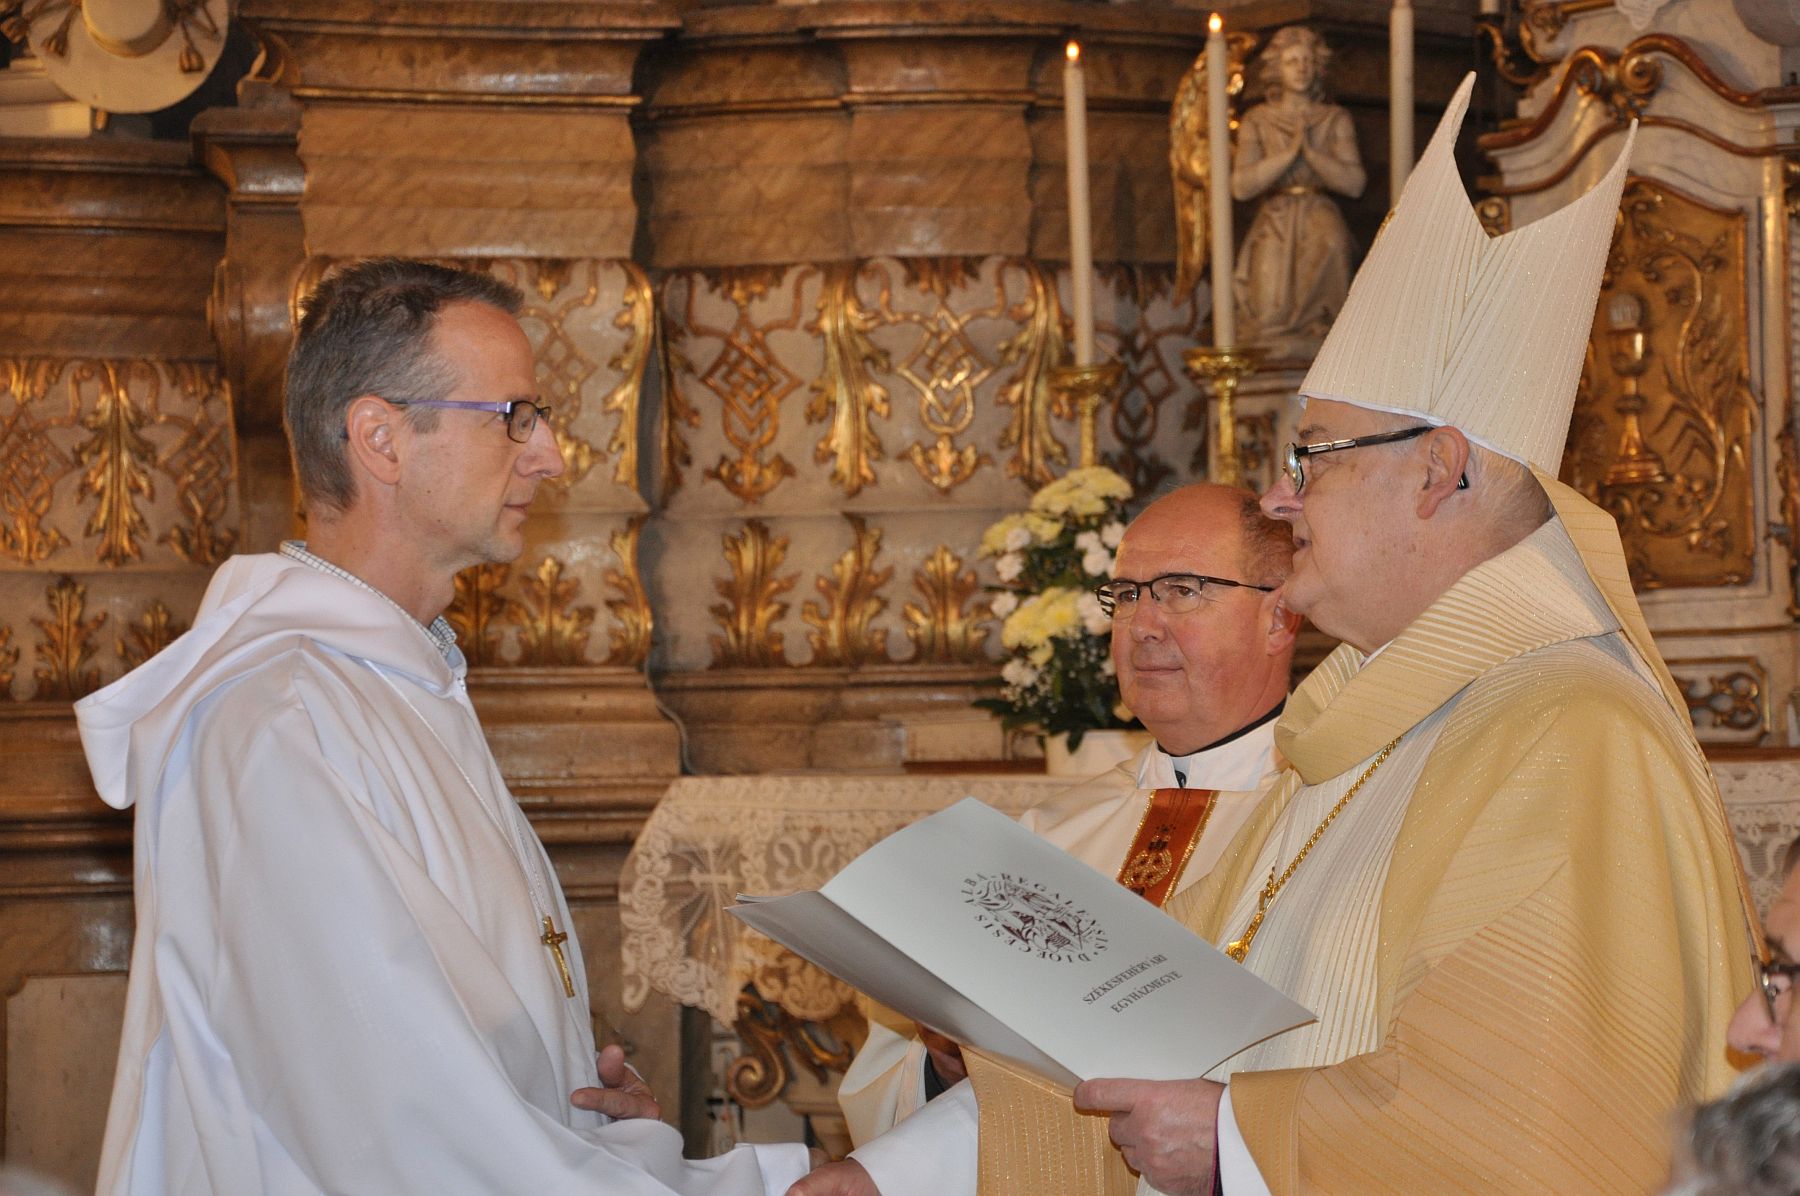 Püspöki megbízóleveleket adtak át a Szent Imre templomban a hétfői kettős ünnepen